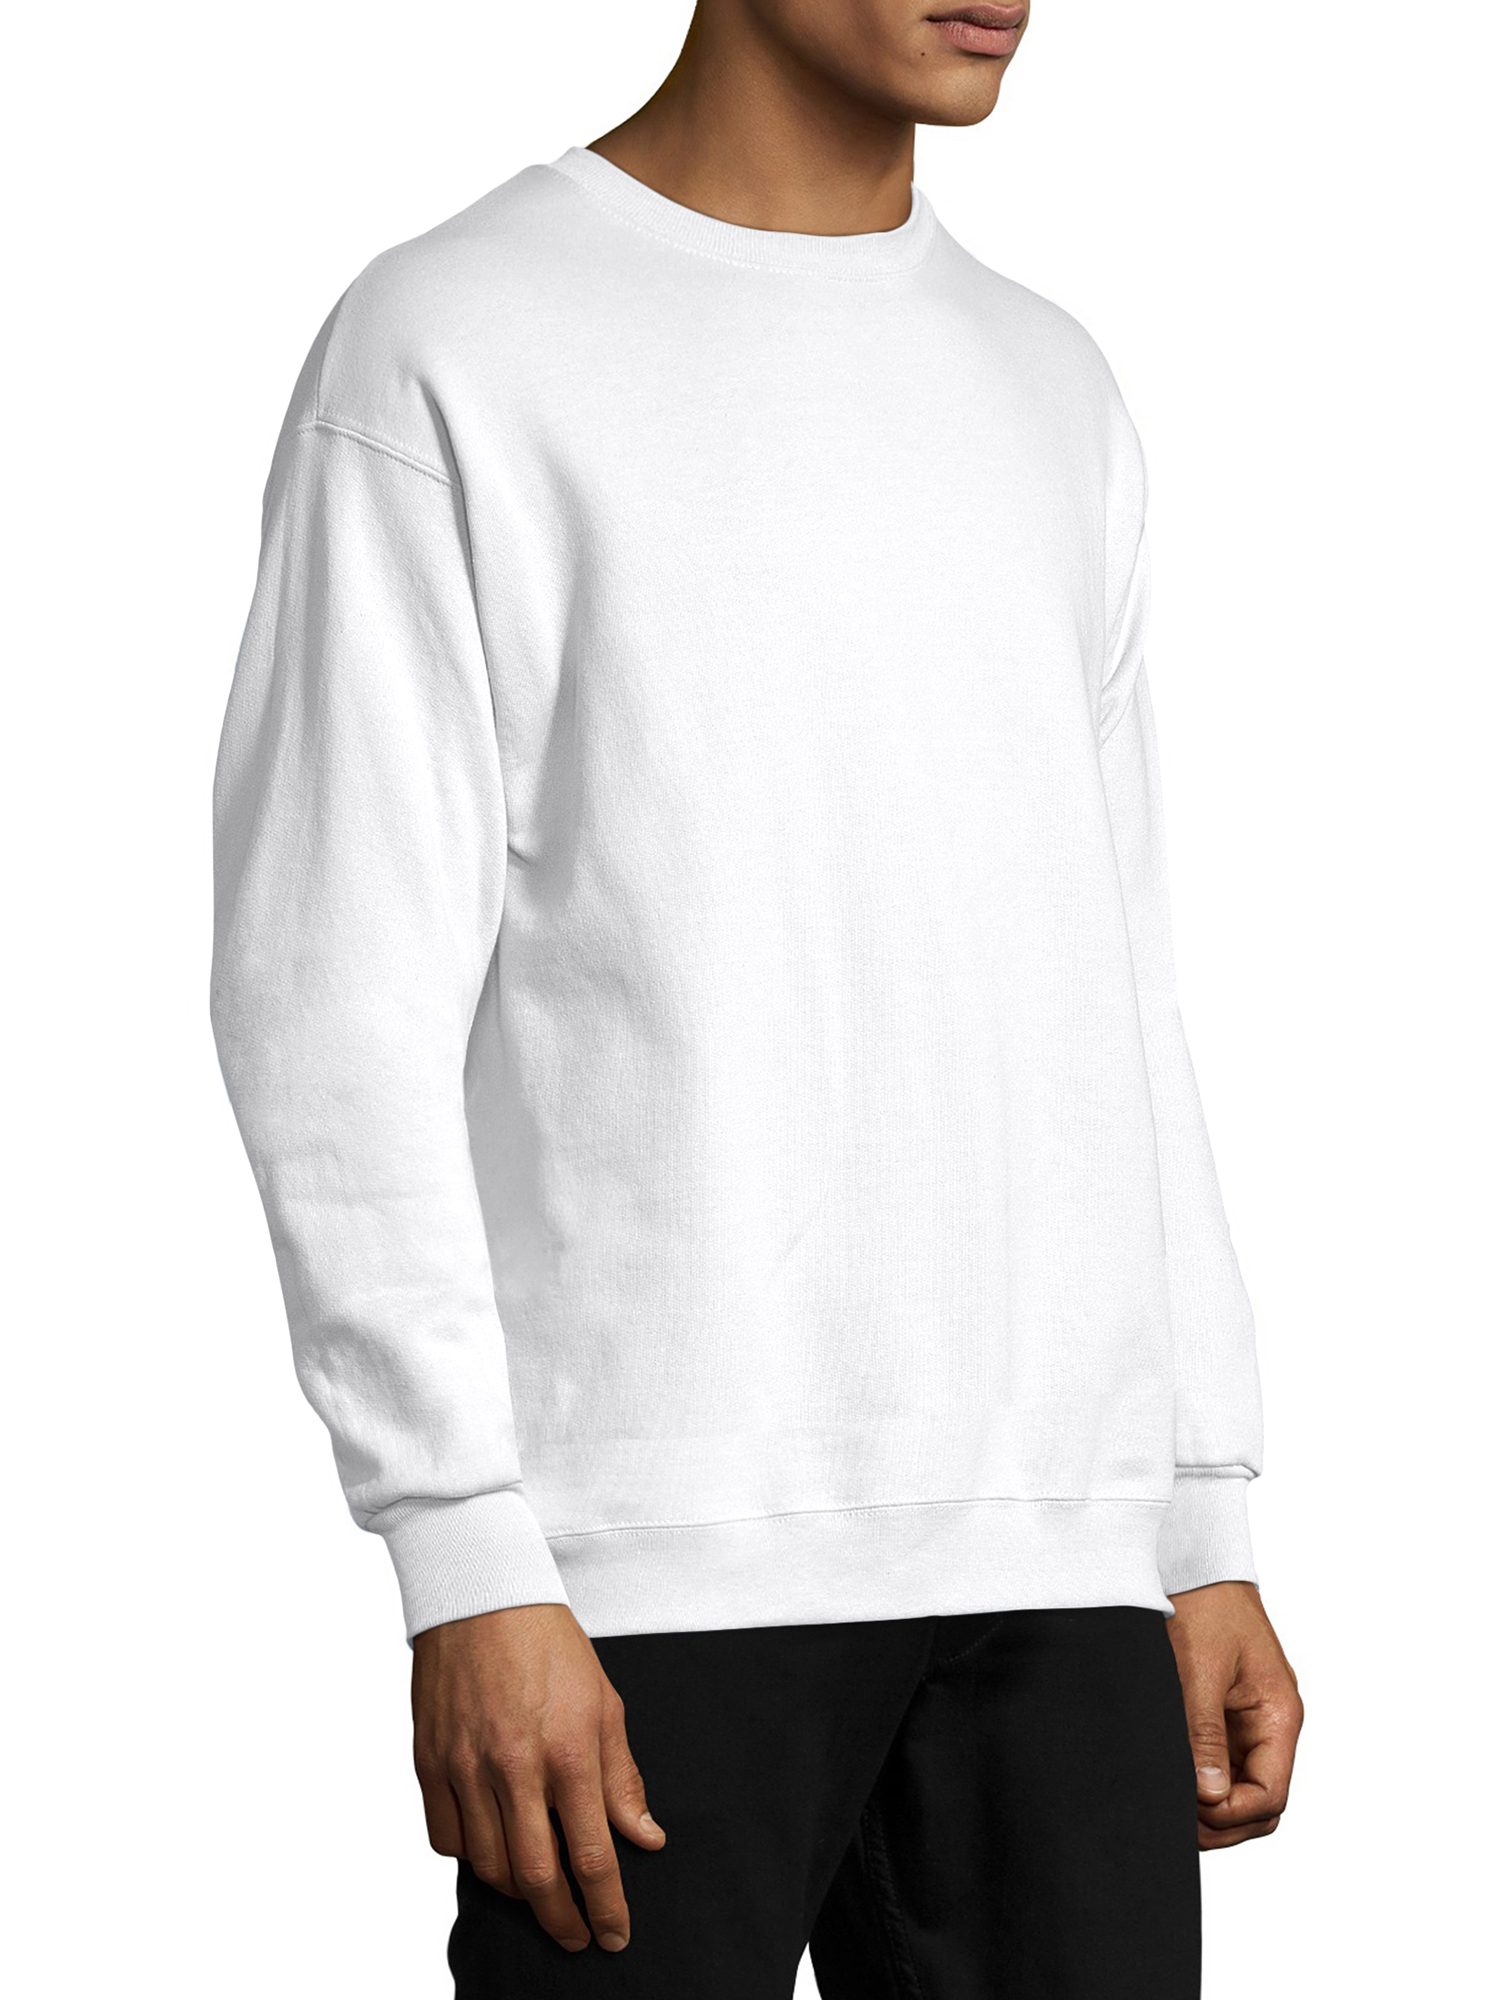 Hanes Men's and Big Men's Ecosmart Fleece Sweatshirt, up to Size 5XL - image 3 of 6